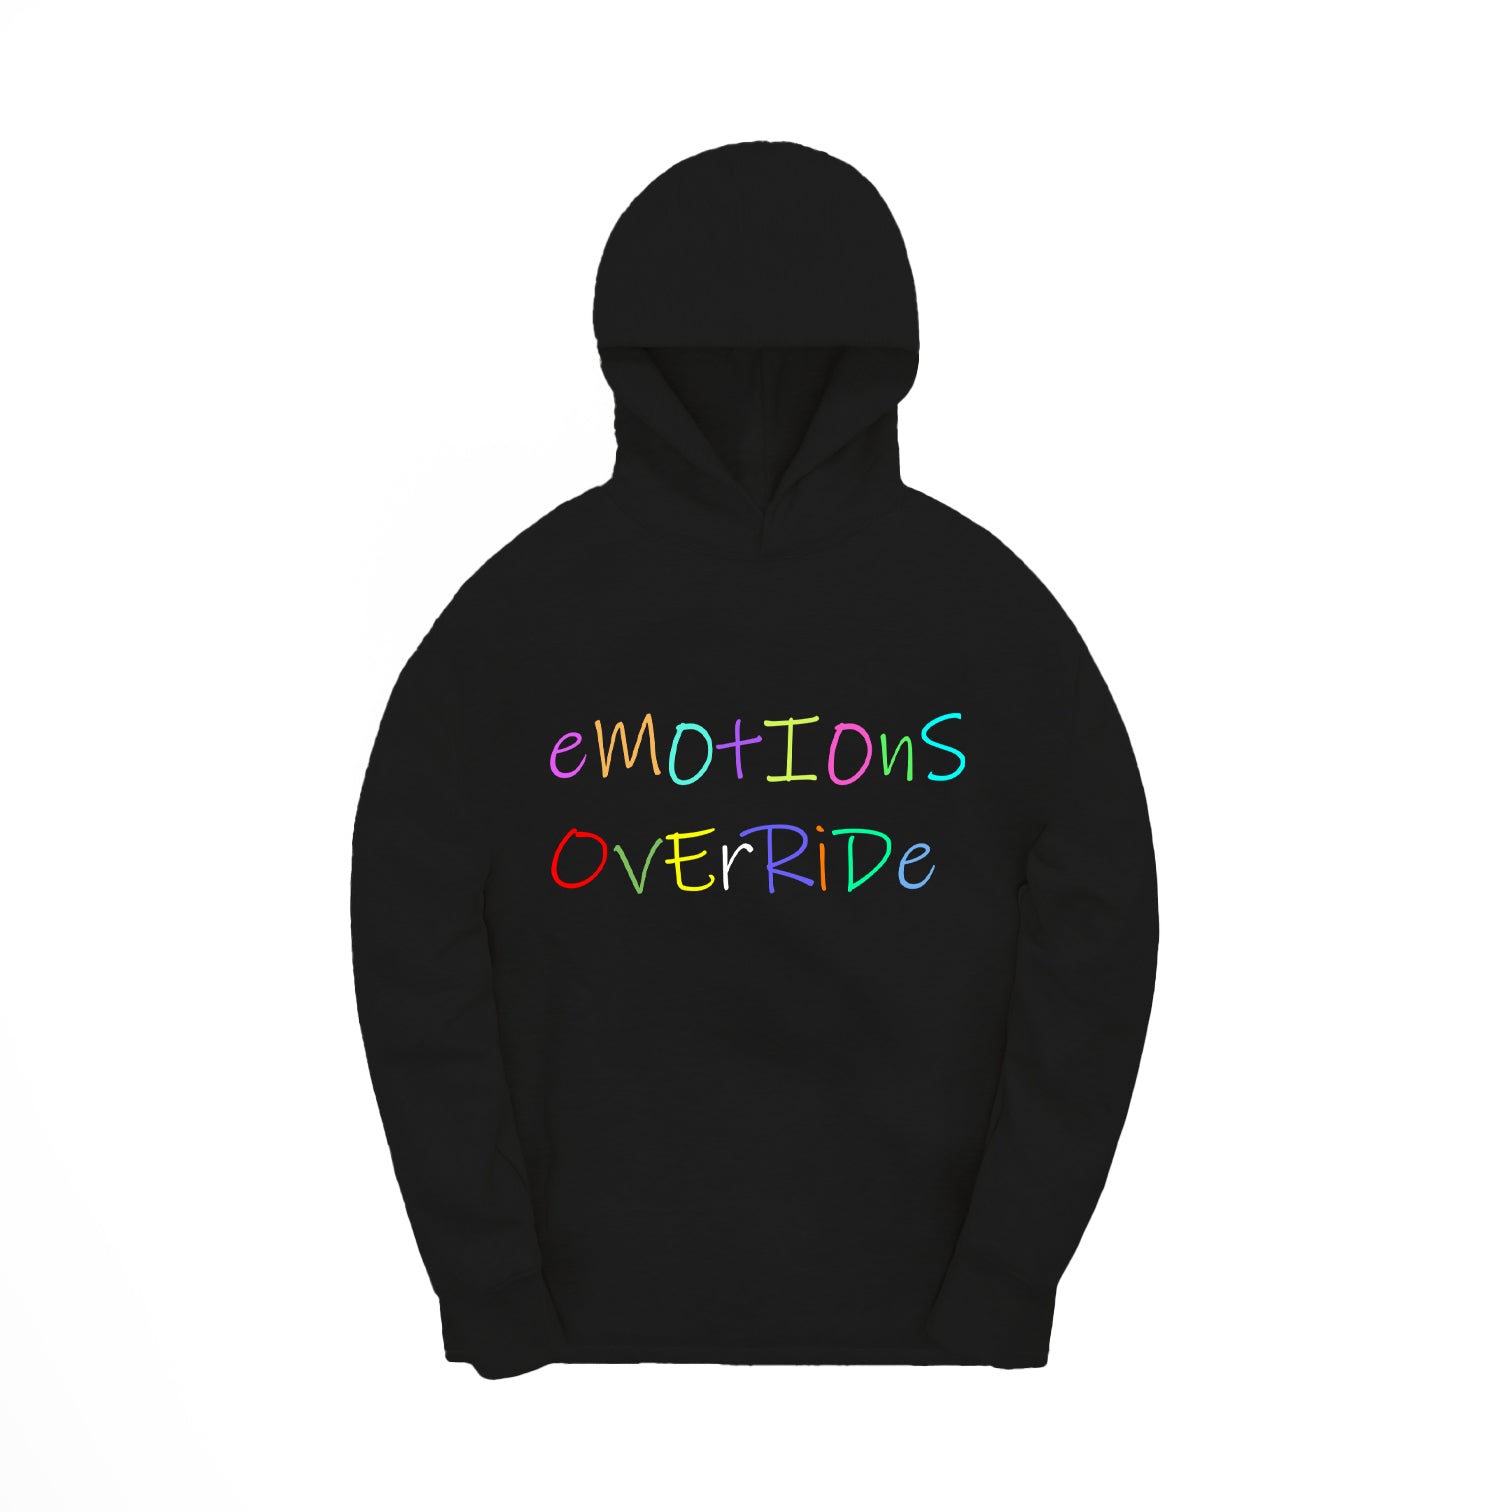 Emotions Override Hoodie/Sweatshirt